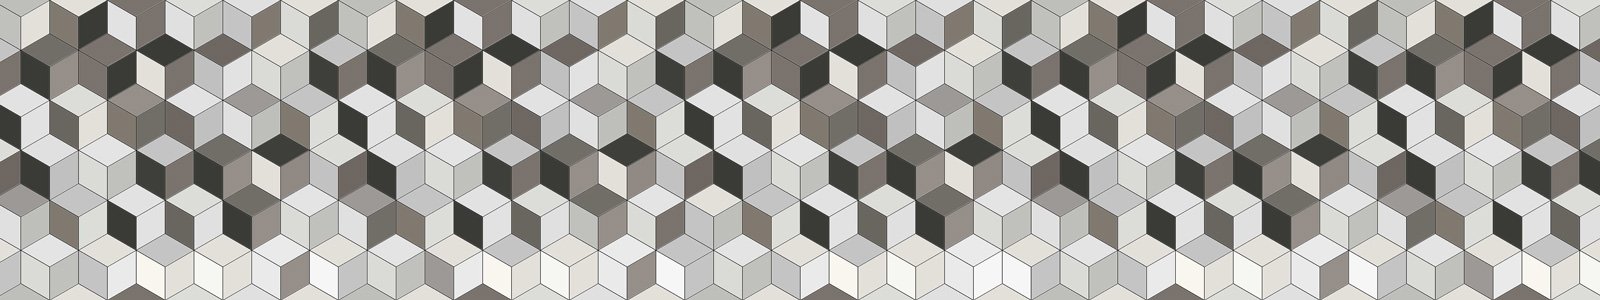 №6920 - Геометрический фон, объемные кубики